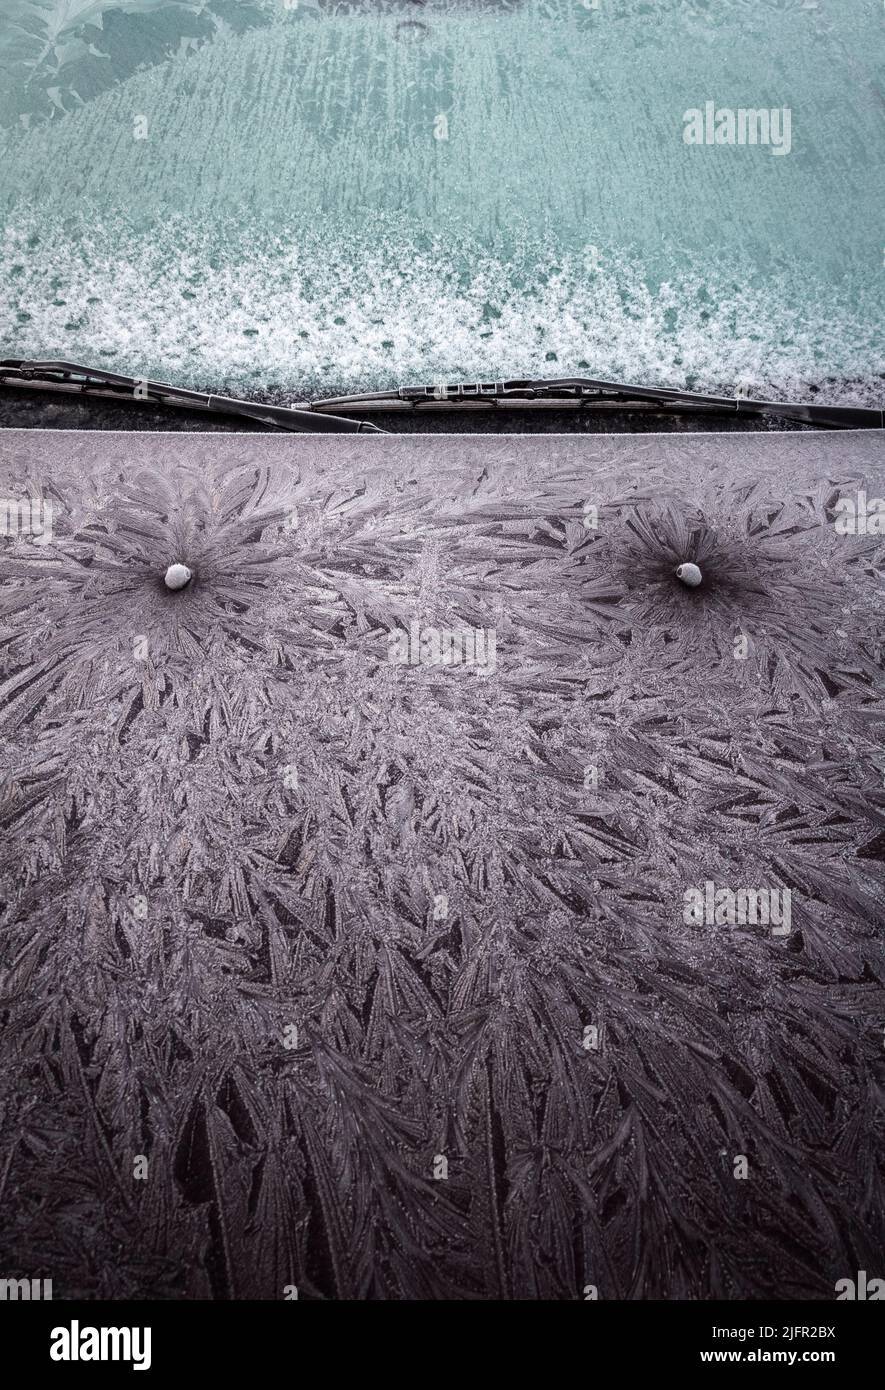 Des motifs bizarres de givre sur la surface du capot de la voiture. Banque D'Images